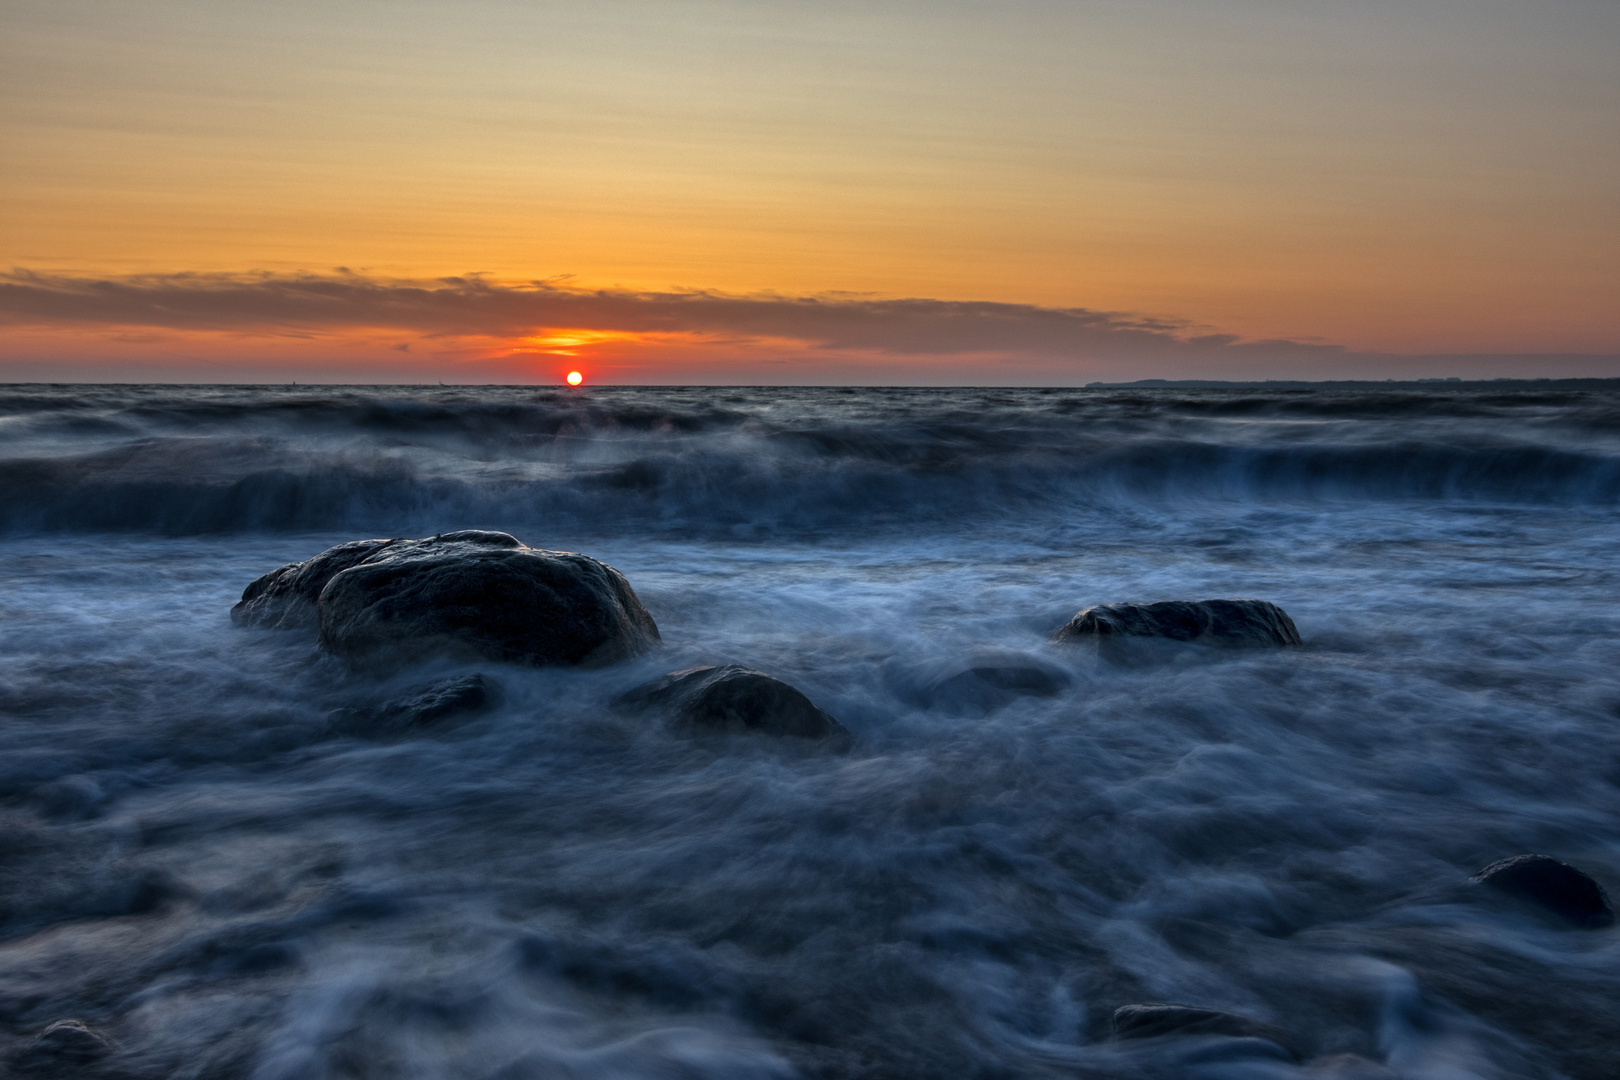 Sunrise at the Baltic Sea 